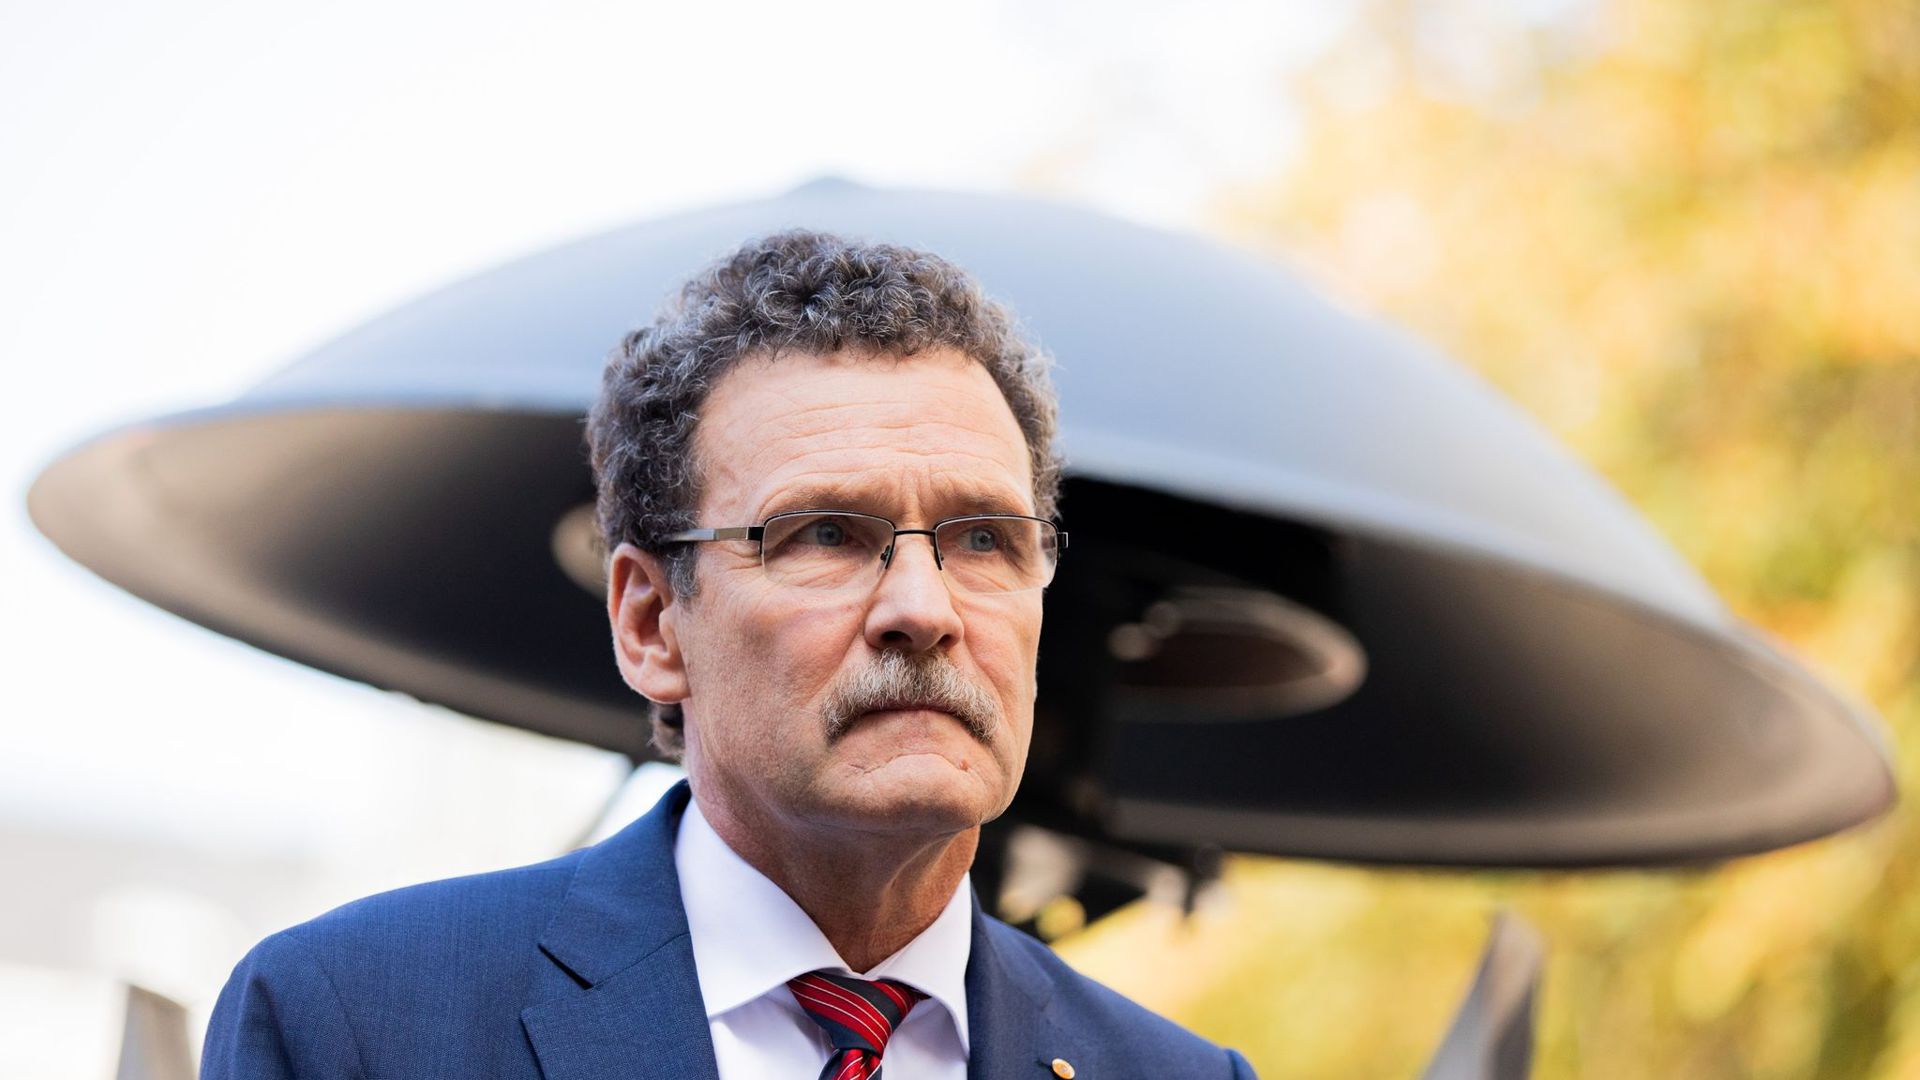 Christoph Unger, Präsident des Bundesamts für Katastrophenhilfe (BBK), soll nach dem fehlgeschlagenen bundesweiten Warntag am 10.09.2020 abgelöst werden.